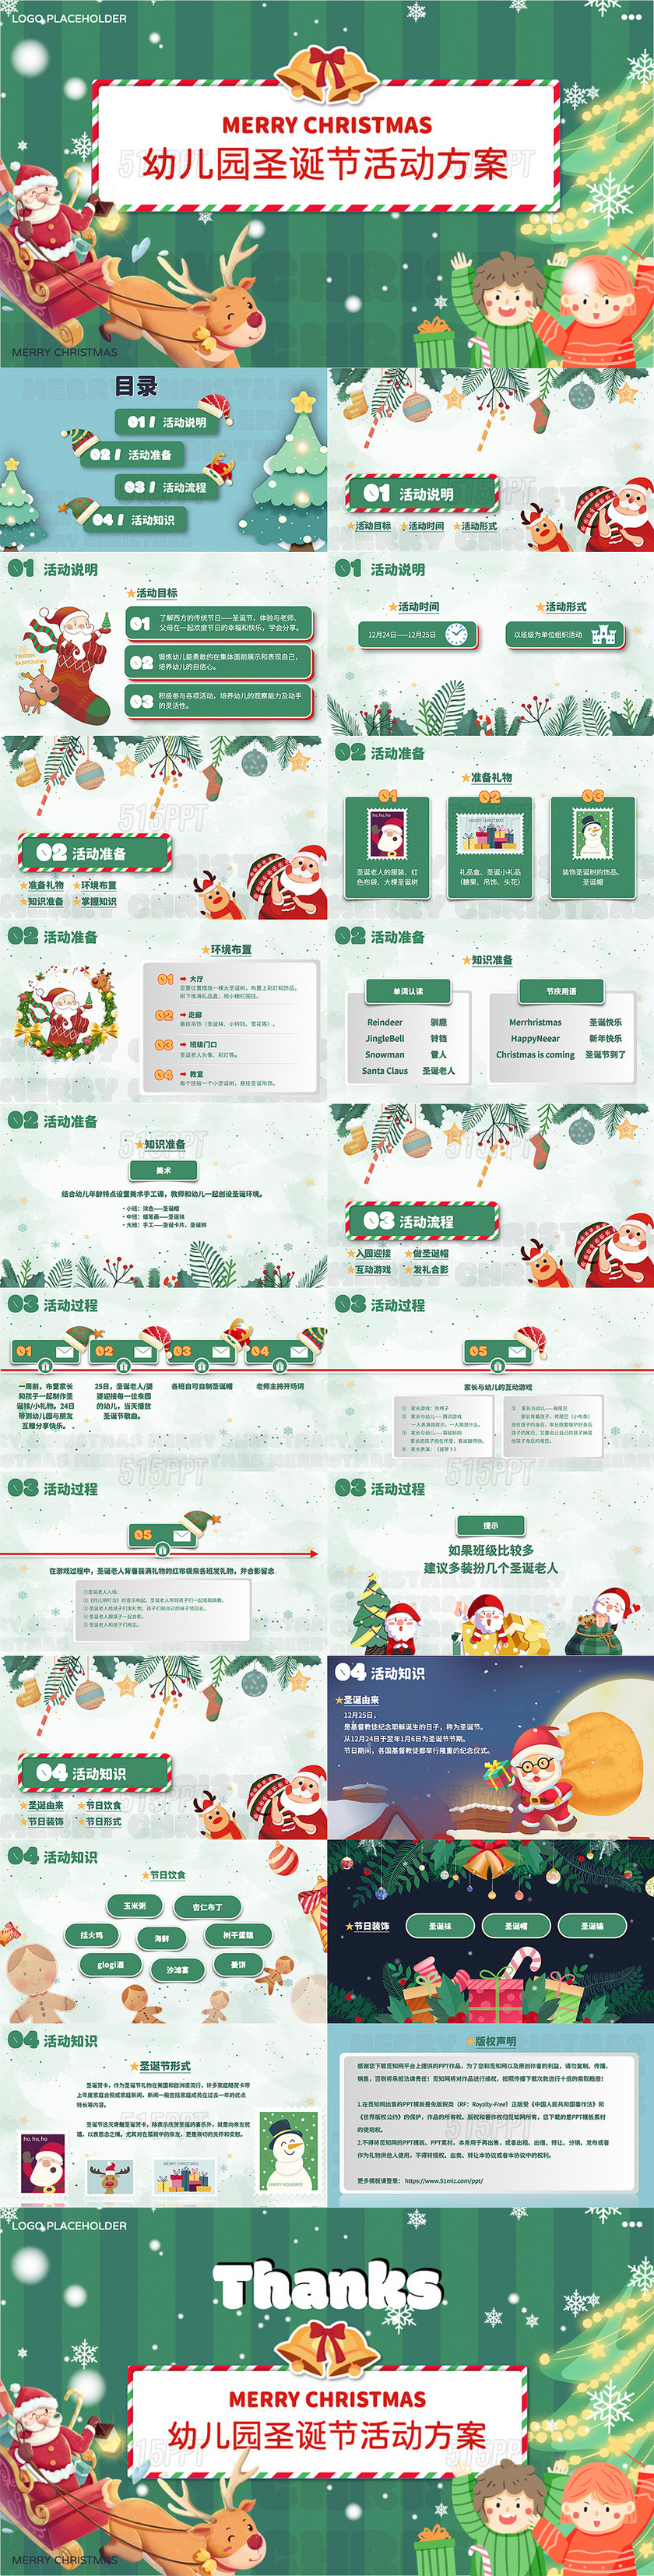 绿色清爽圣诞节风格幼儿园圣诞节主题活动策划方案PPT模版